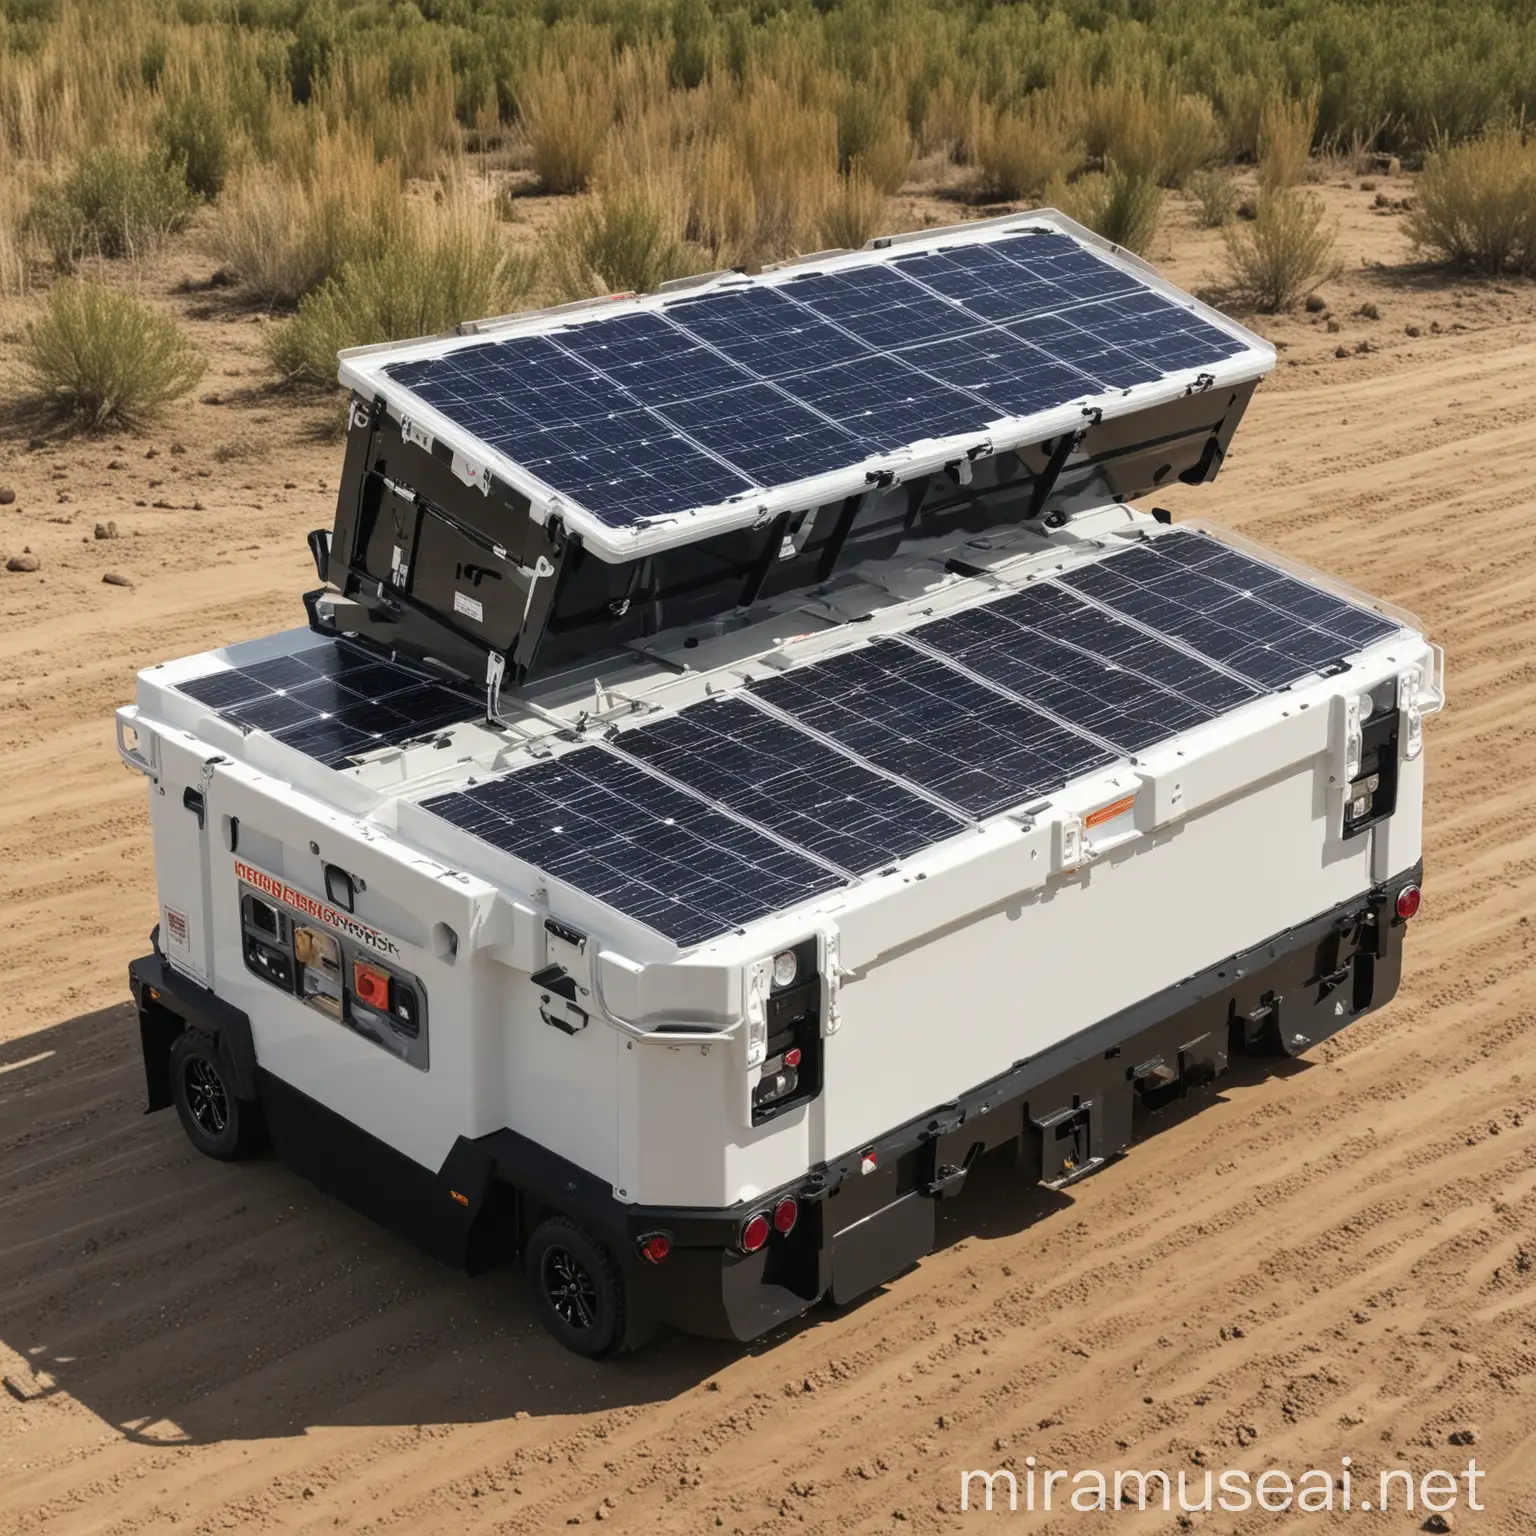 trailercon caja seca equipada de paneles solares fotovoltáicos con baterias de almacenaje portátiles